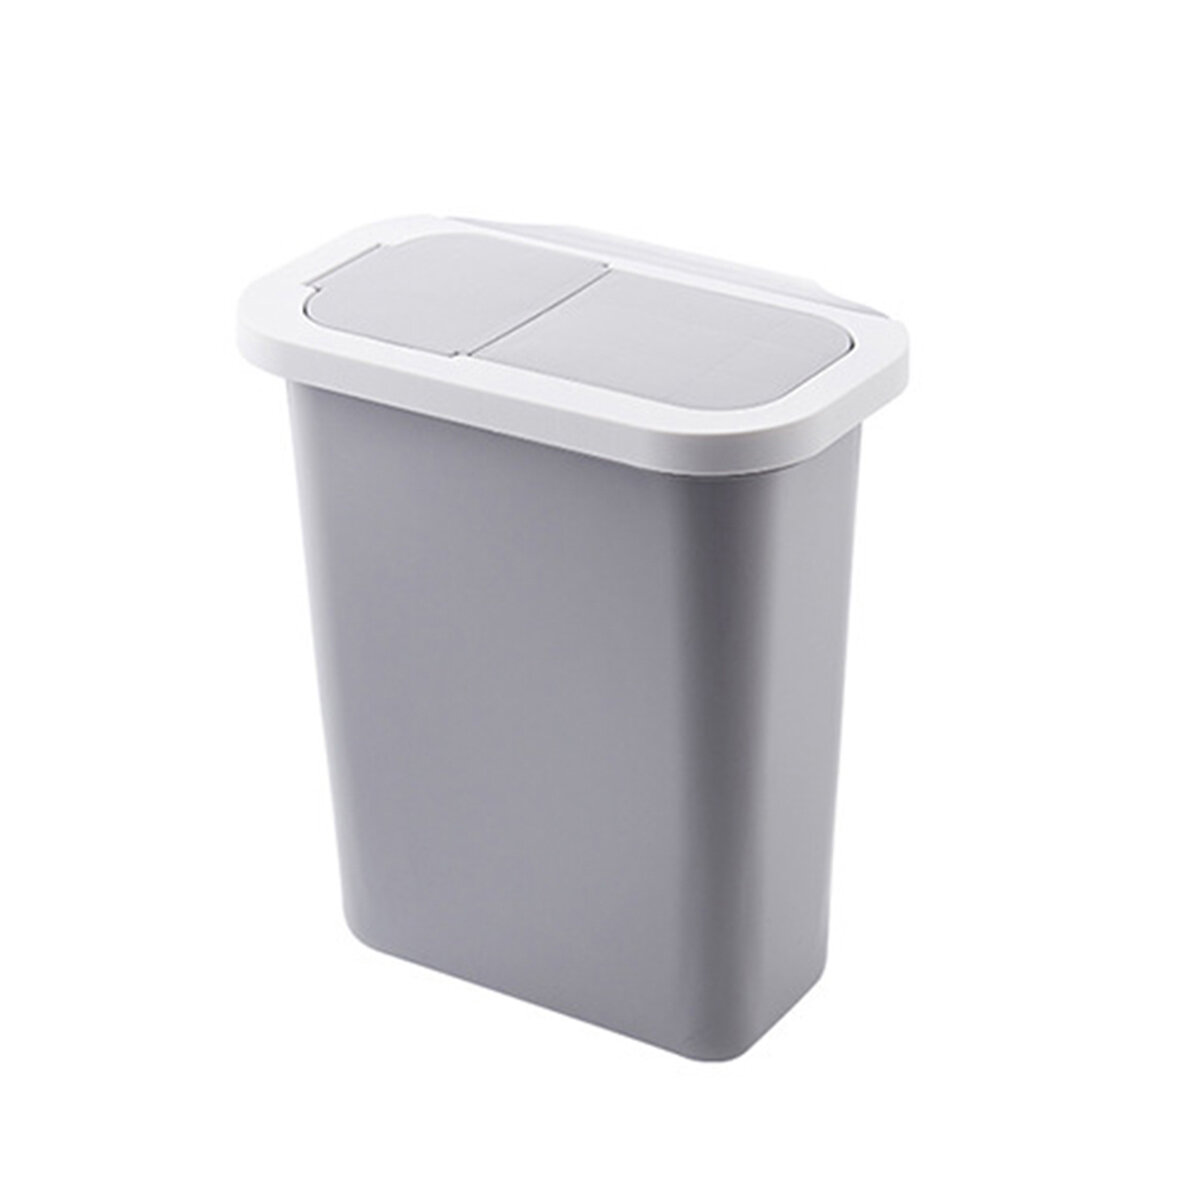 Ευρωπαϊκή αποθήκη | Cabinet Door Hanging Trash Can with Lid Garbage Waste Bin Waste Storage Wastebucket for Office Home Bathroom Kitchen